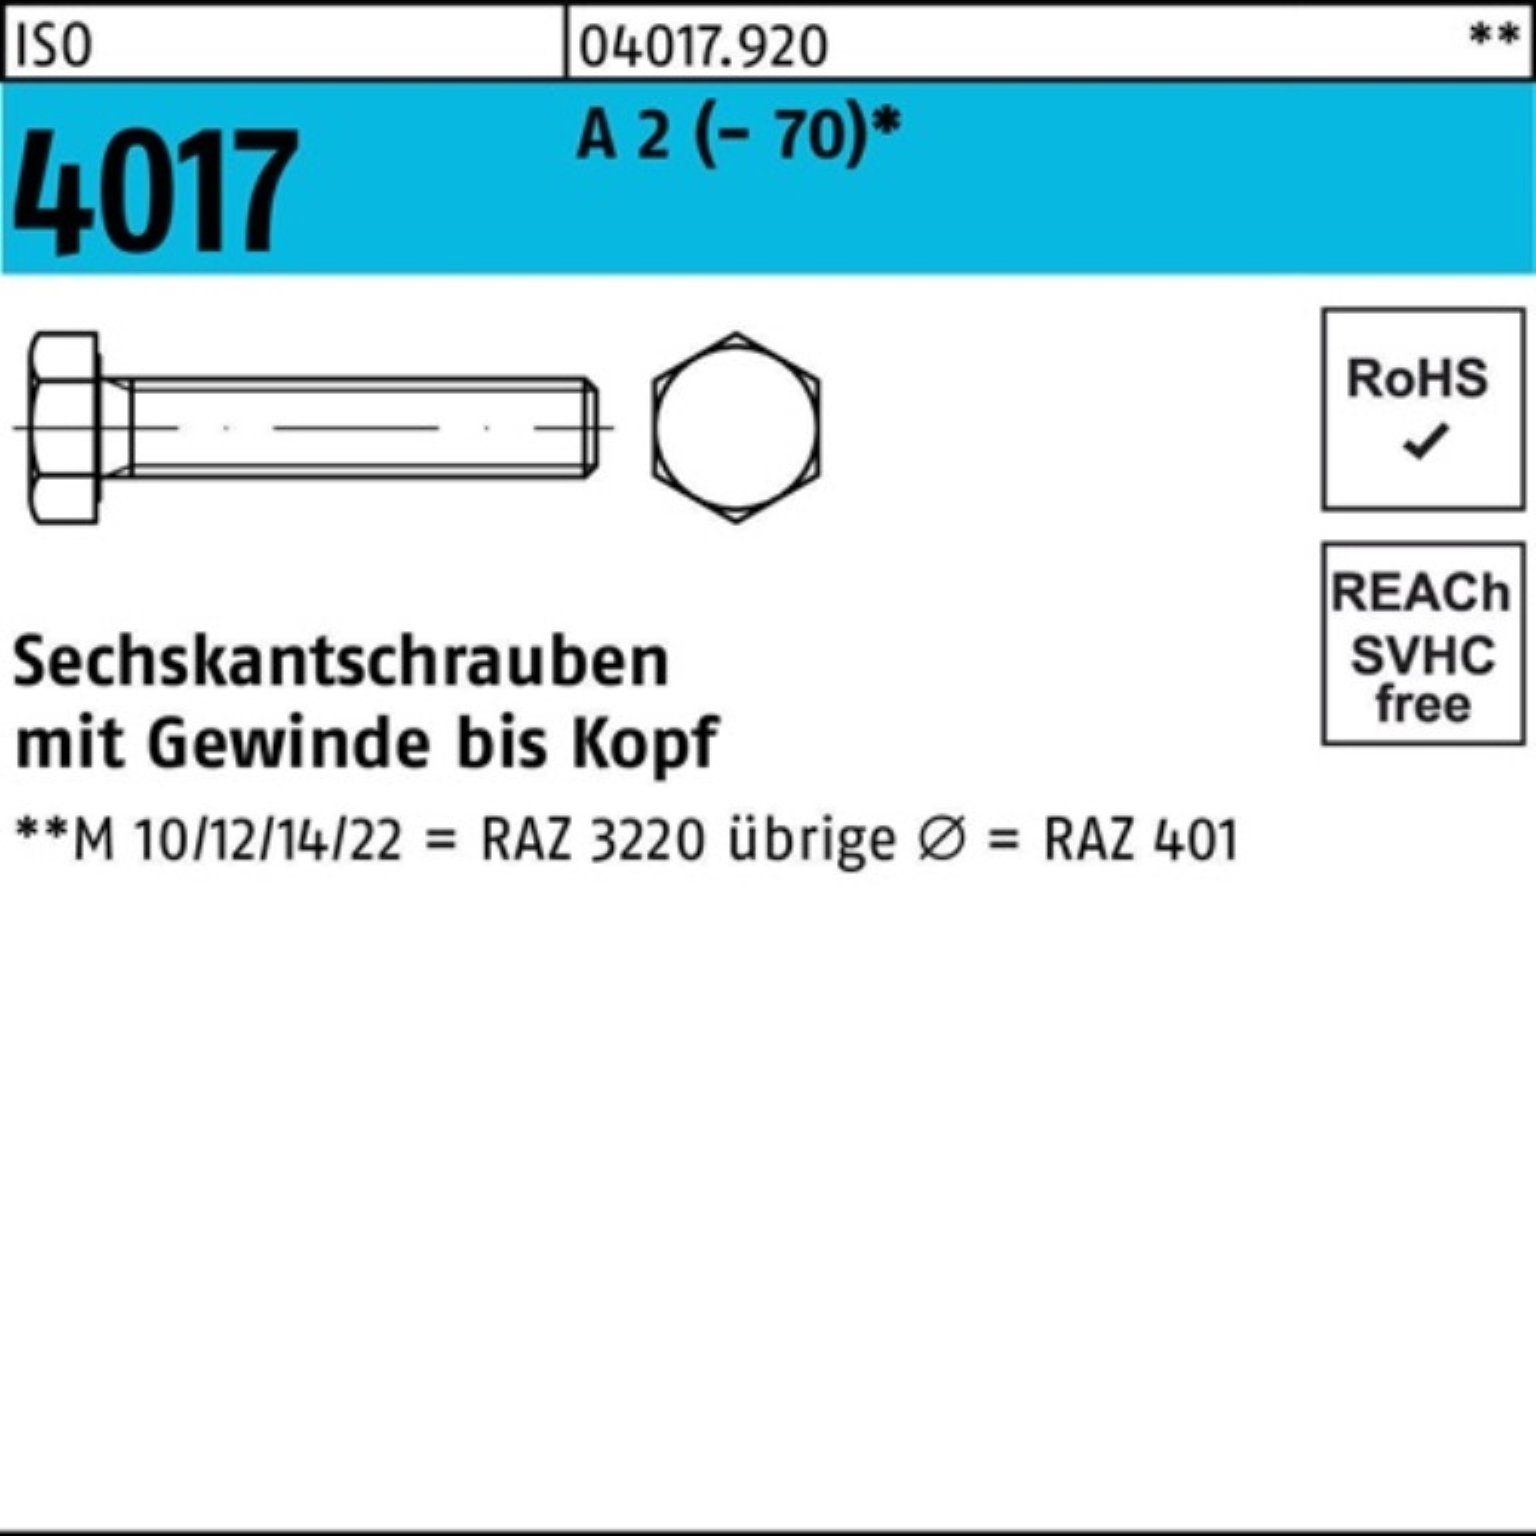 Bufab Sechskantschraube 100er Pack Sechskantschraube ISO 4017 VG M30x 80 A 2 (70) 1 Stück I